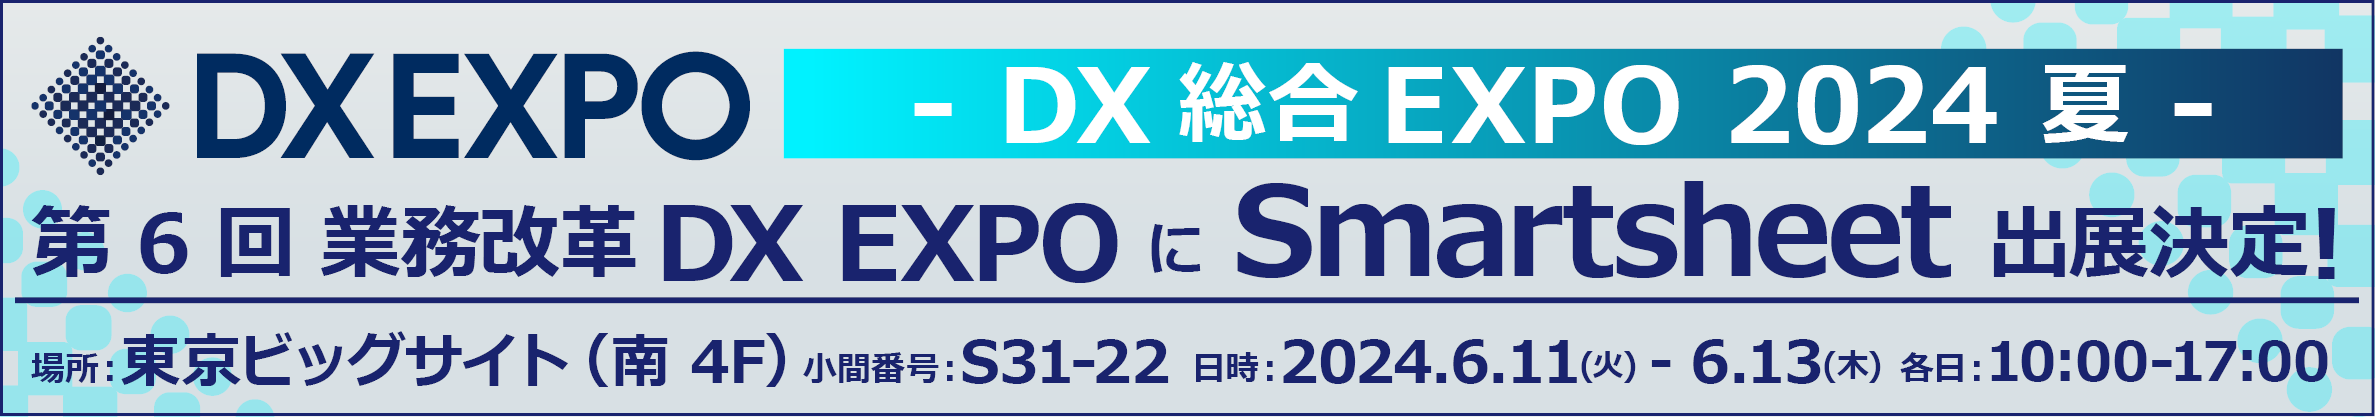 DX 総合 EXPO 2024 - 夏 -